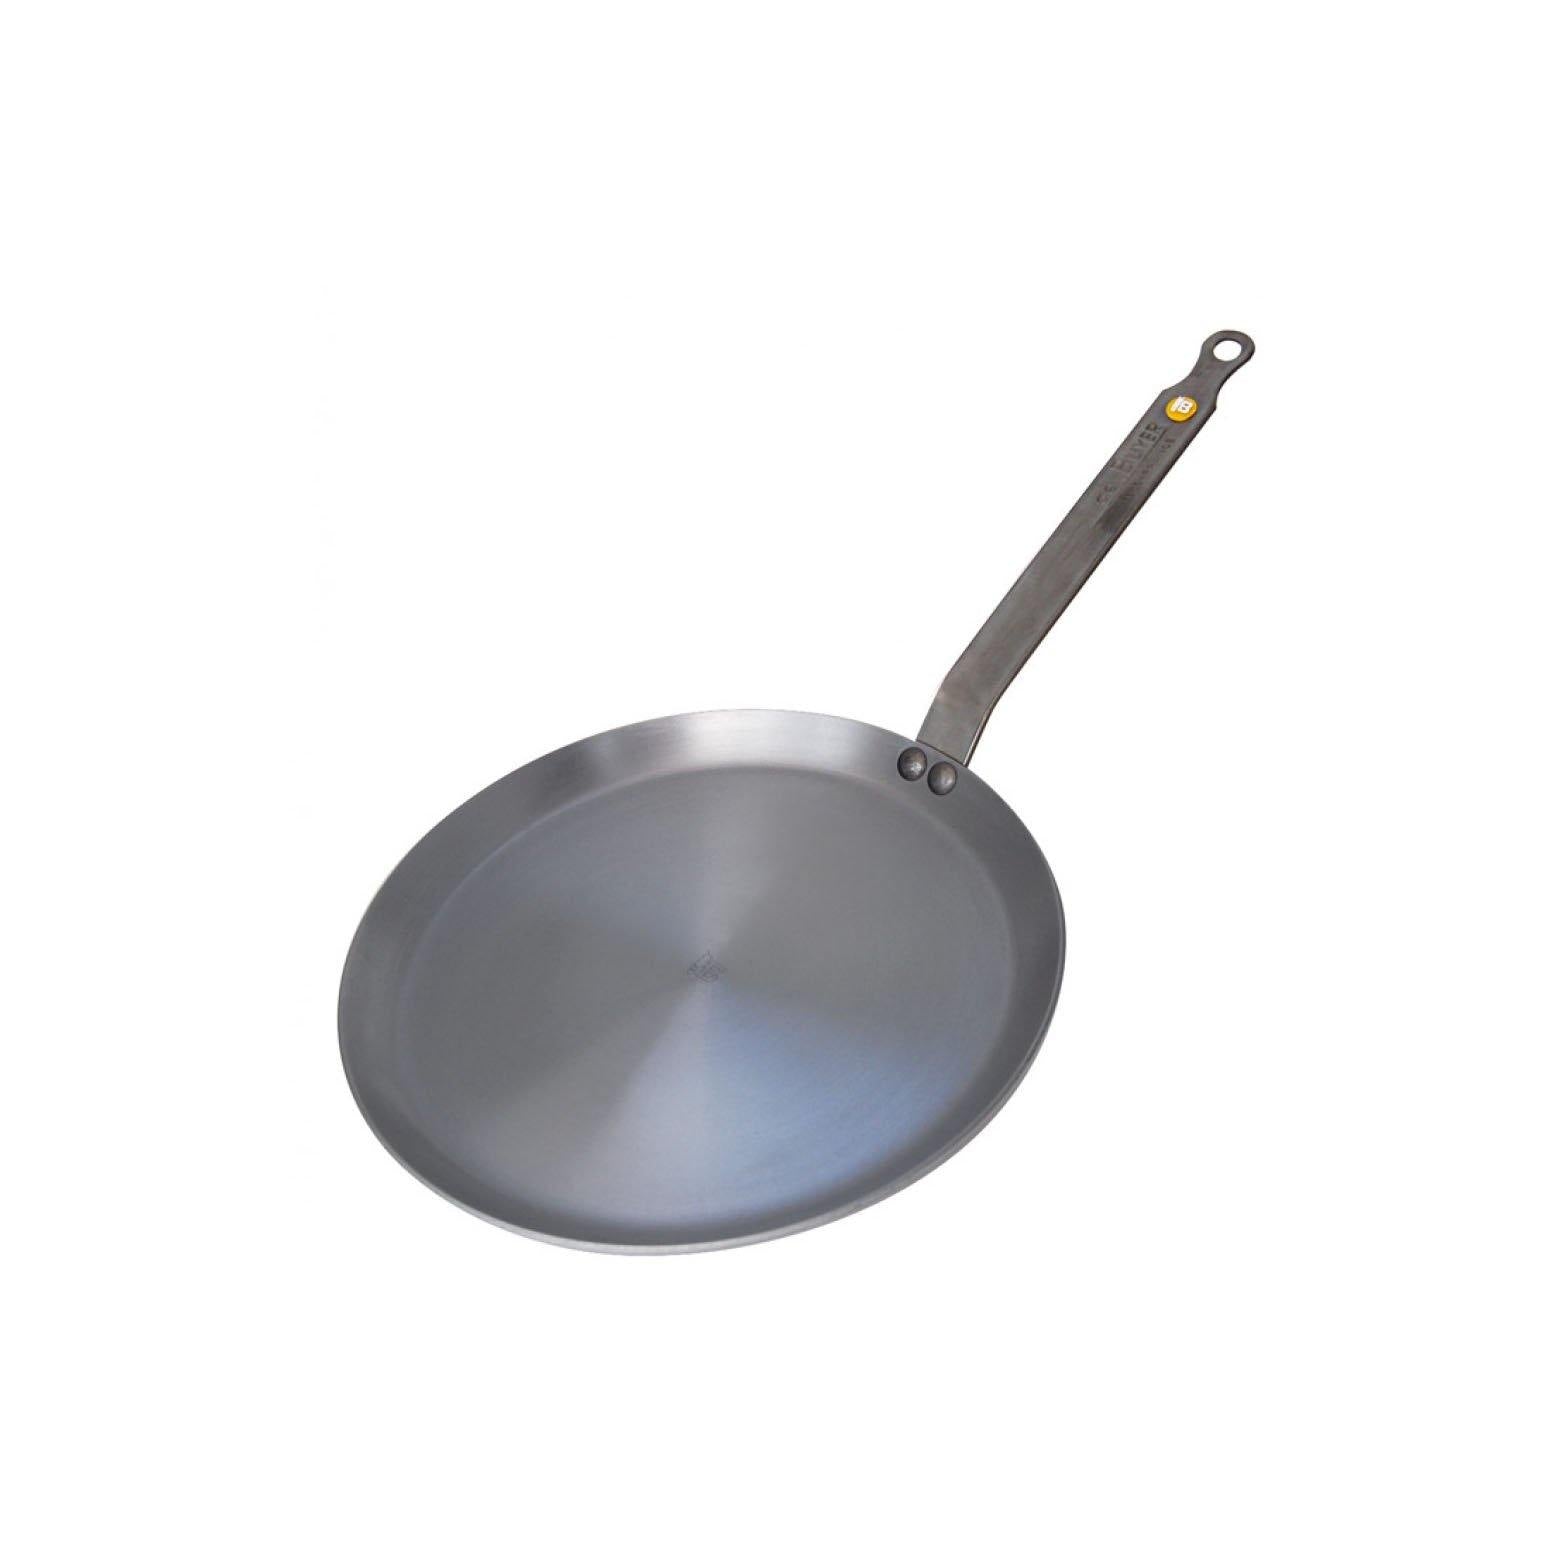 de Buyer MINERAL B Carbon Steel Omelette Pan 9.5